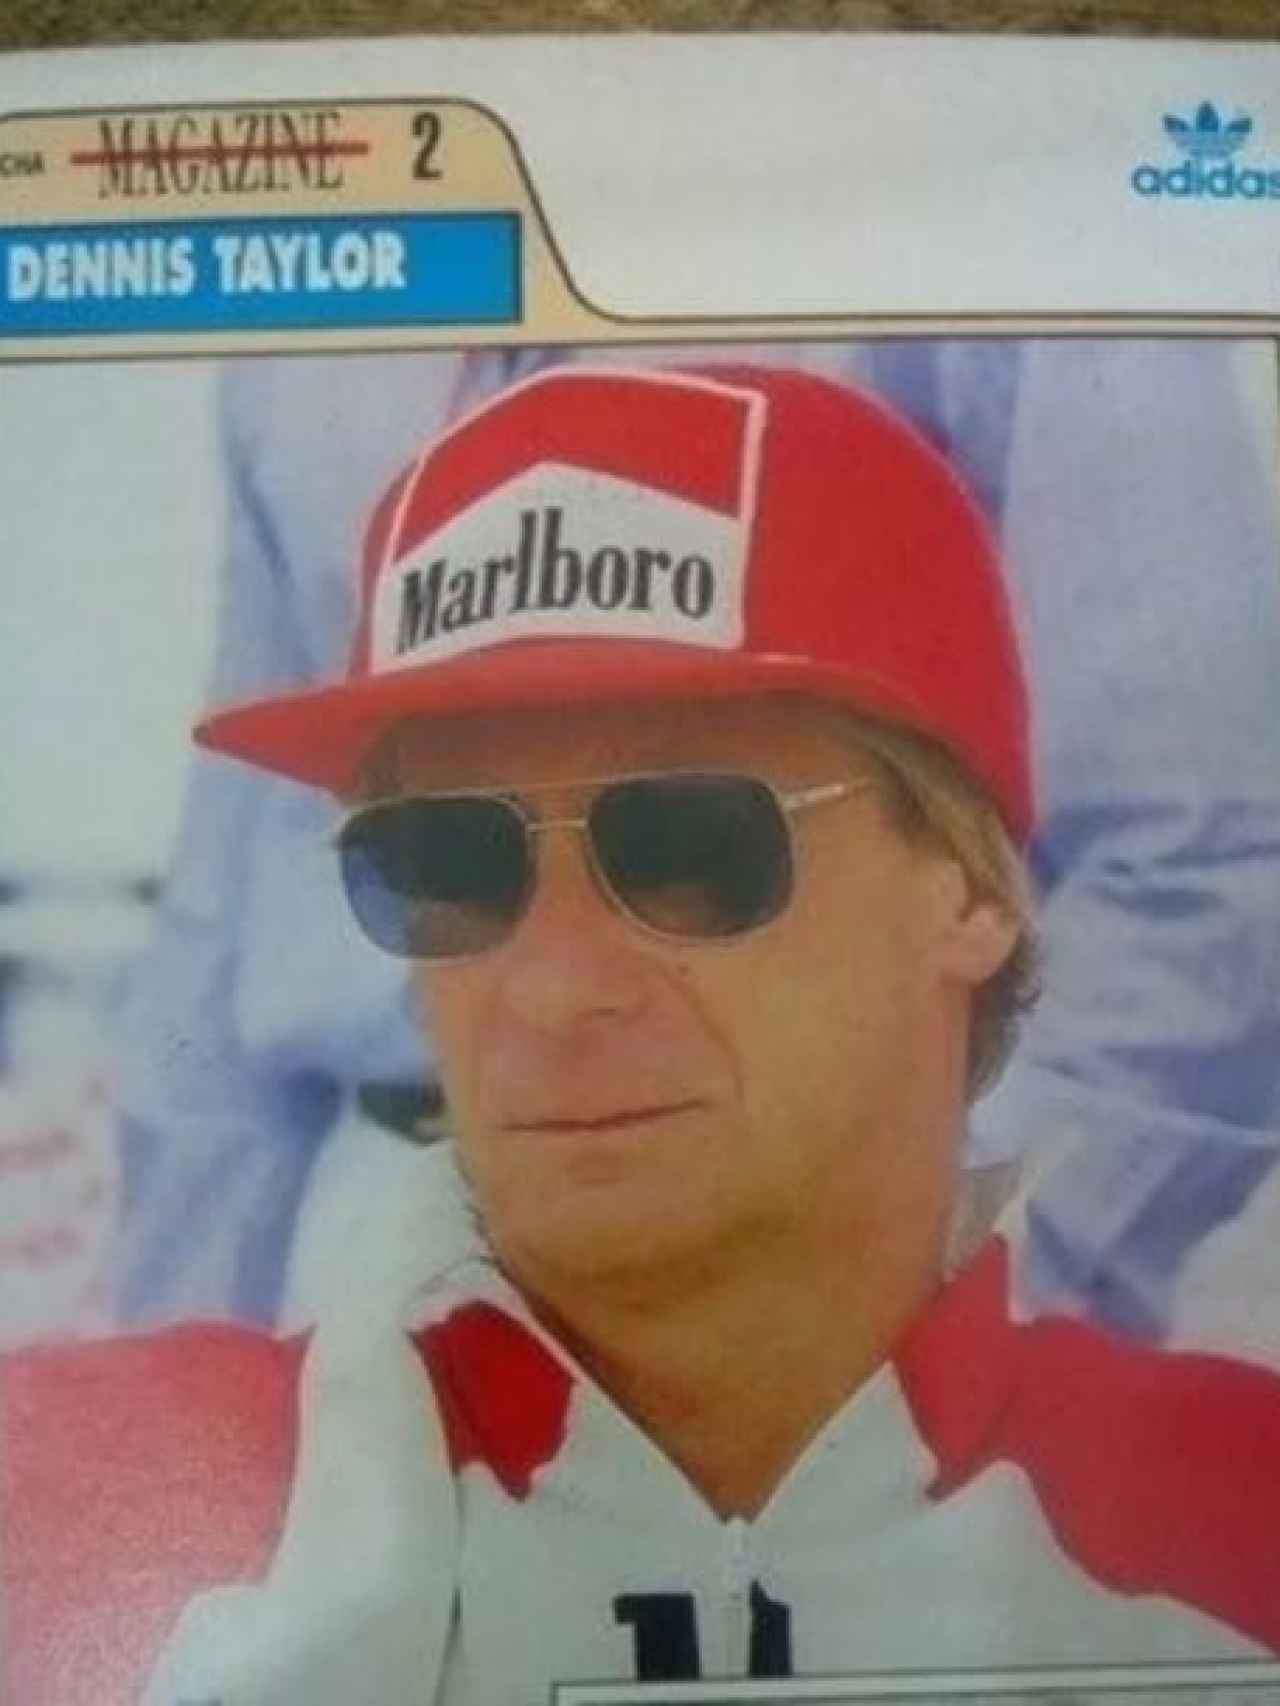 Un cromo de Adidas con Dennis Taylor, exbanquero y campeón de regatas.